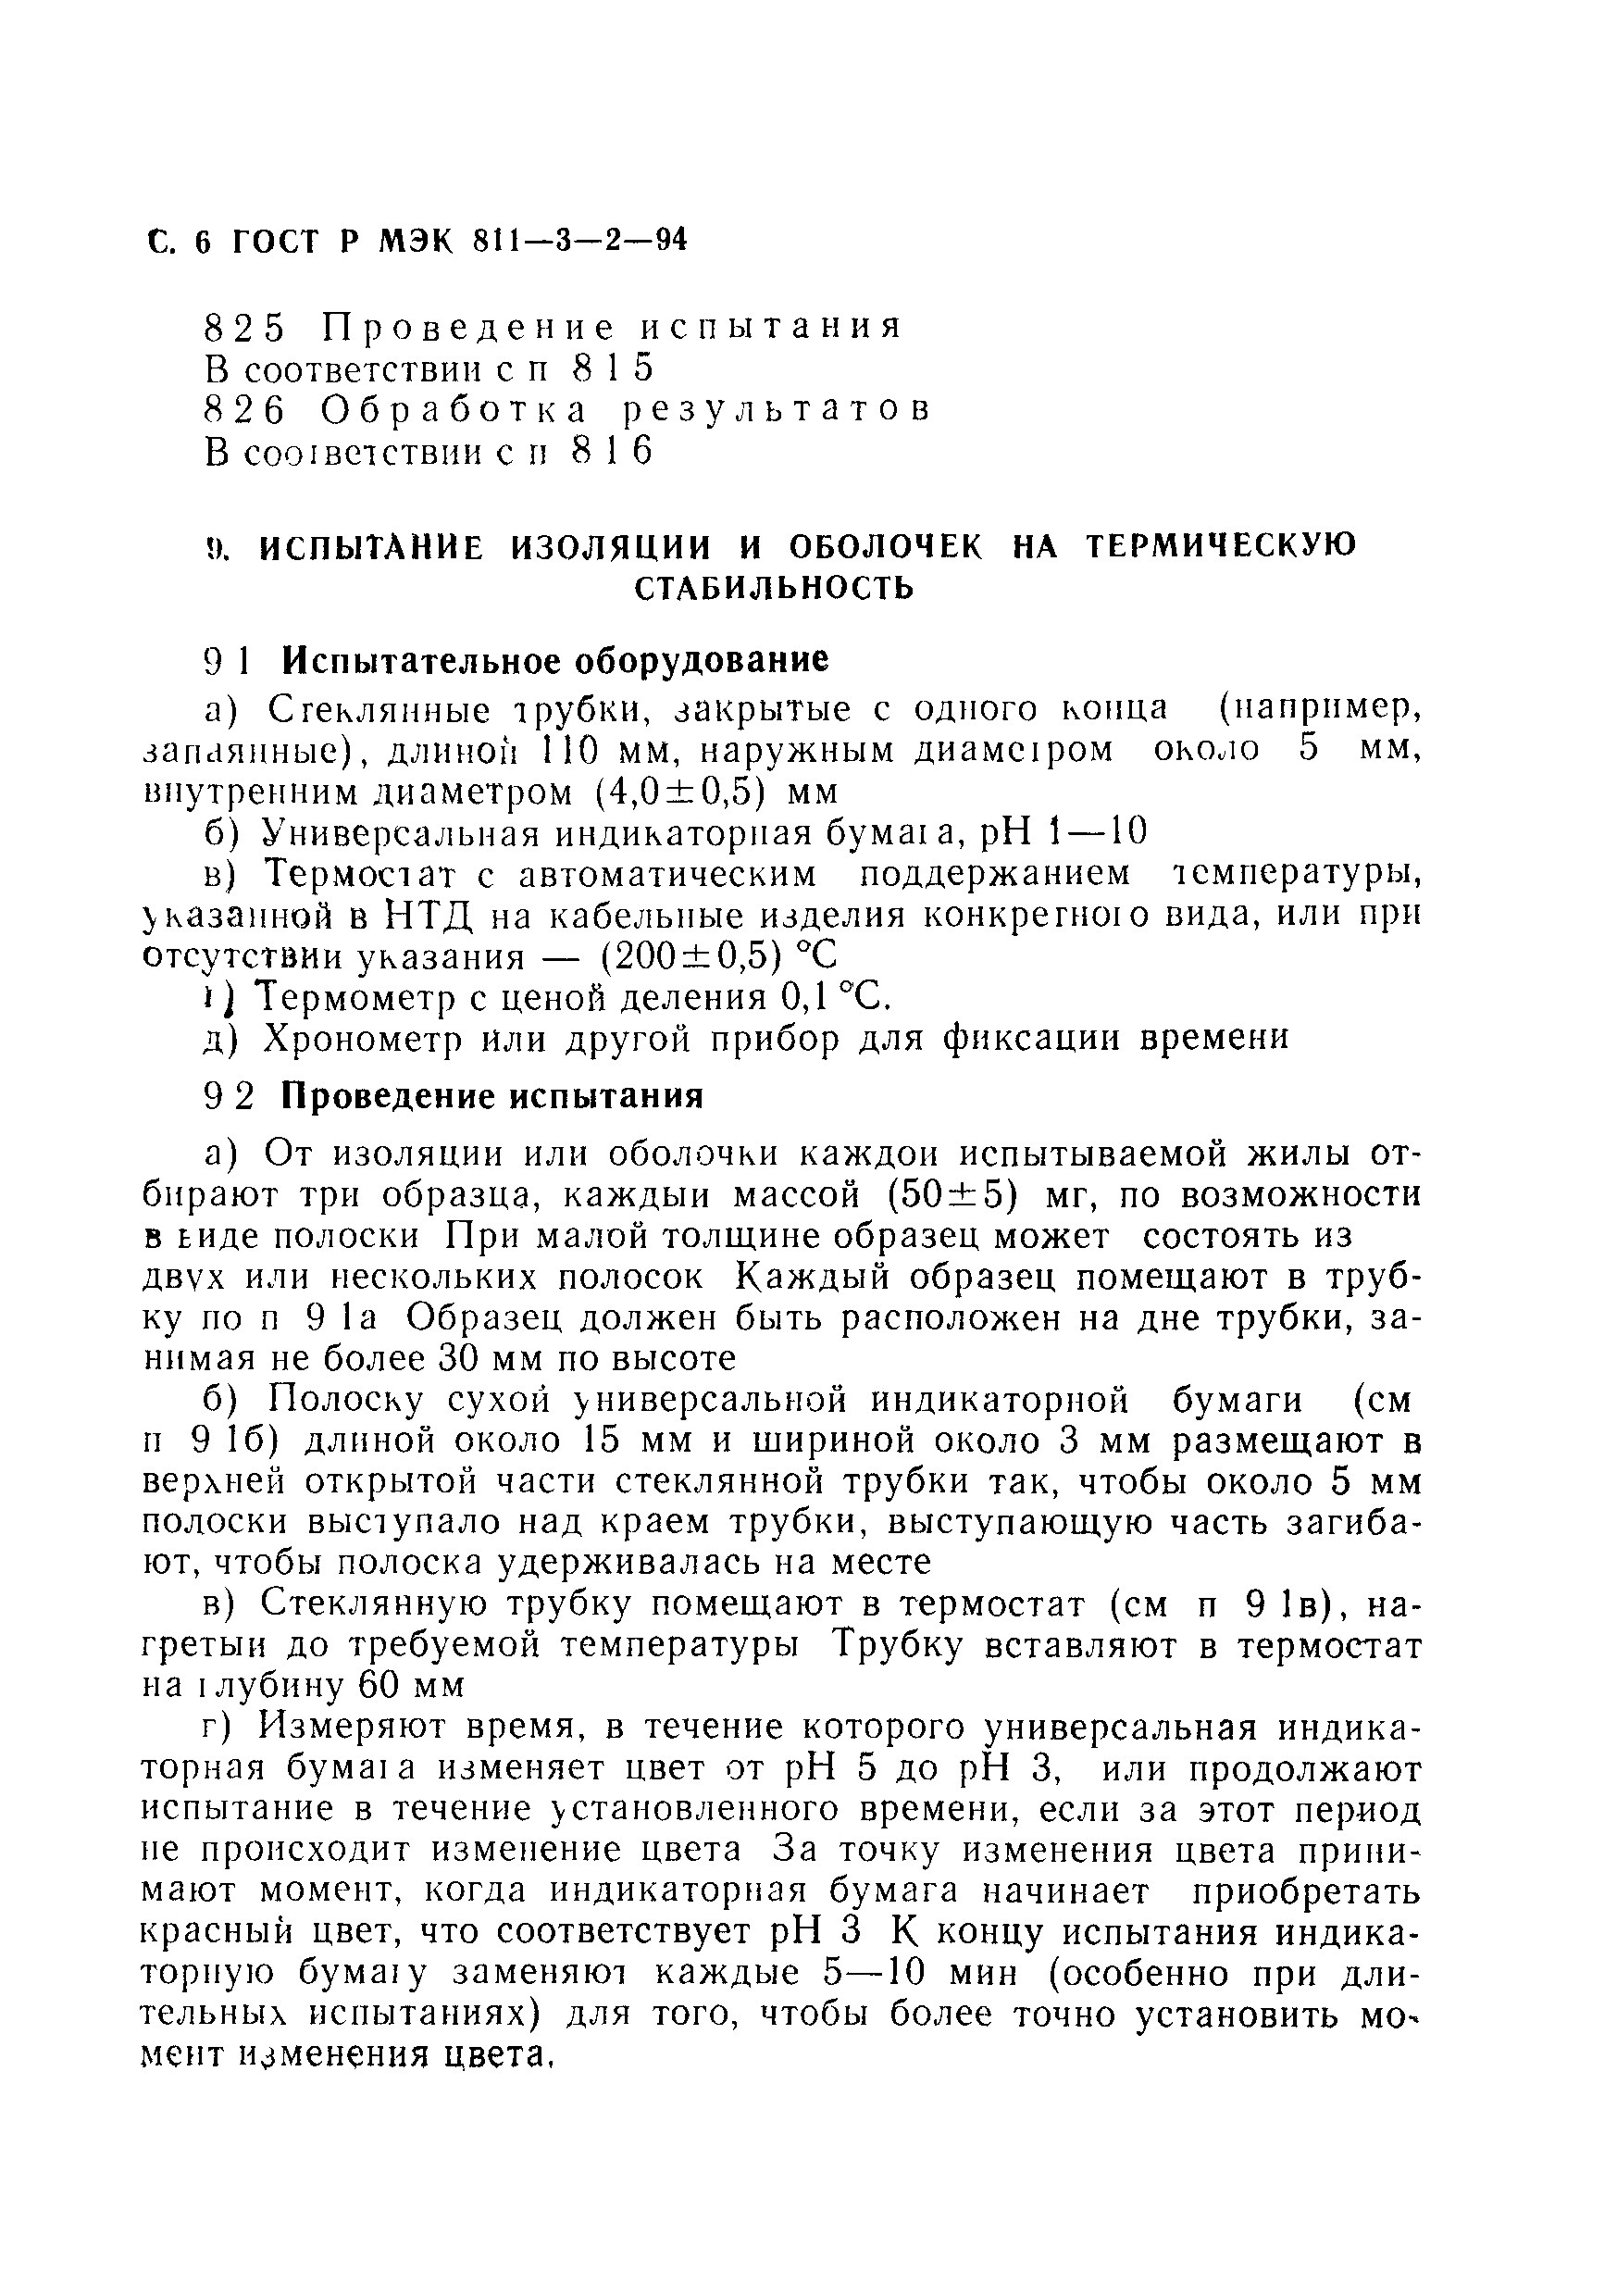 ГОСТ Р МЭК 60811-3-2-94